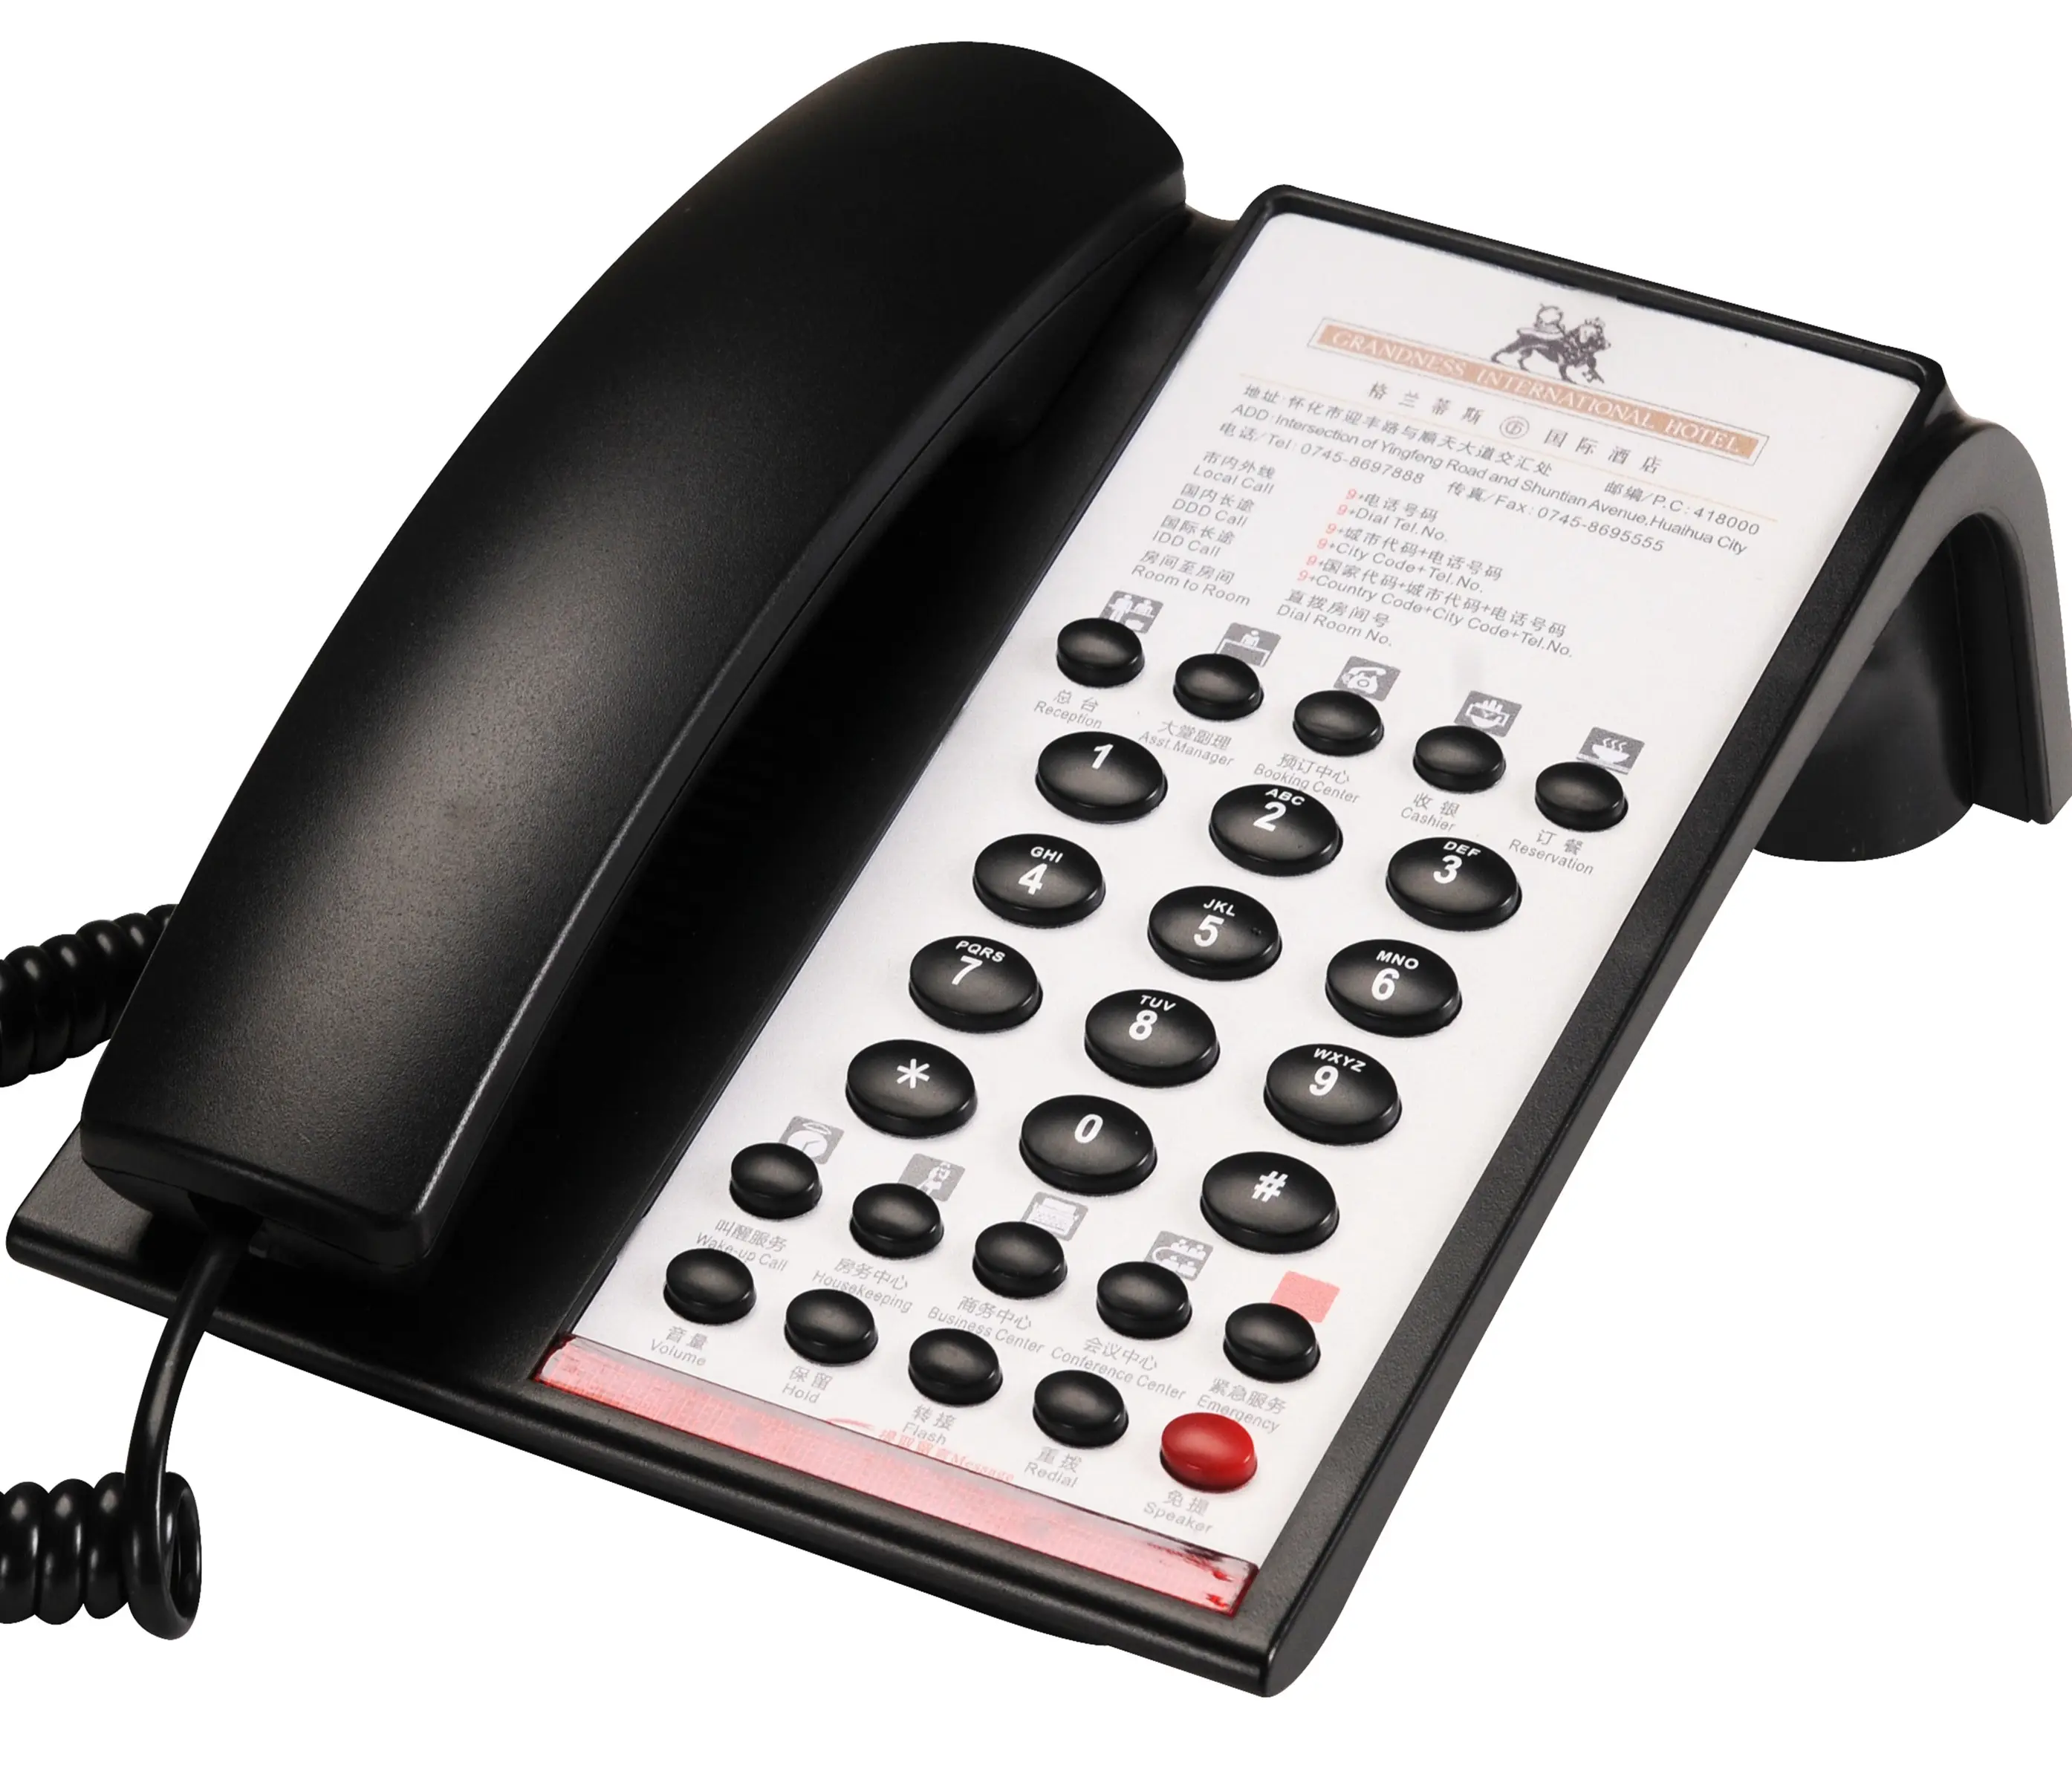 Гостиничный профессиональный телефон, совместимый с системой АТС